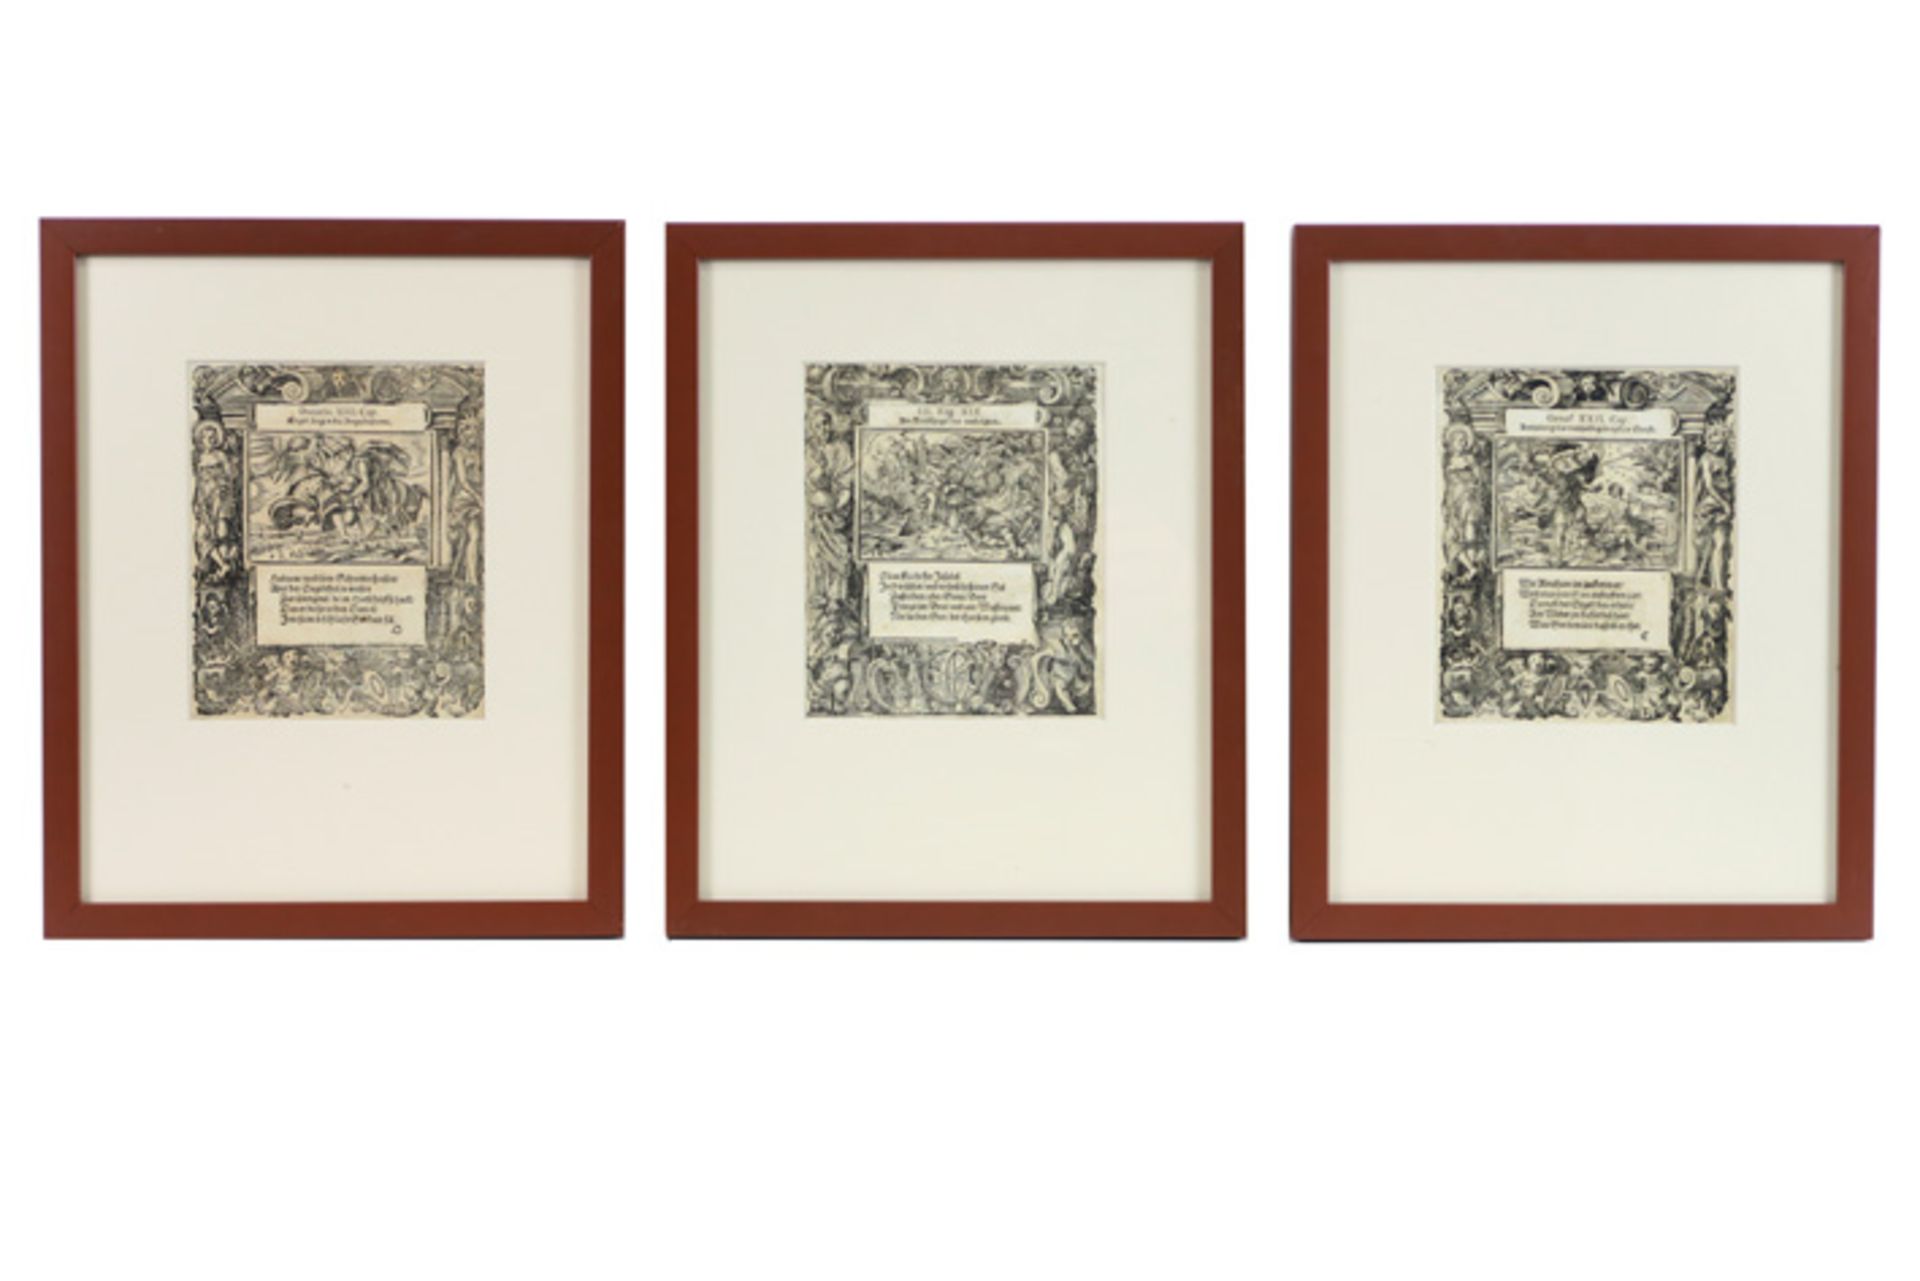 Drie 16° eeuwse Duitse houtsnedes (telkens ca 16,5 x 14 cm) : - uit "Daniel XIII" : "Engel sleurt